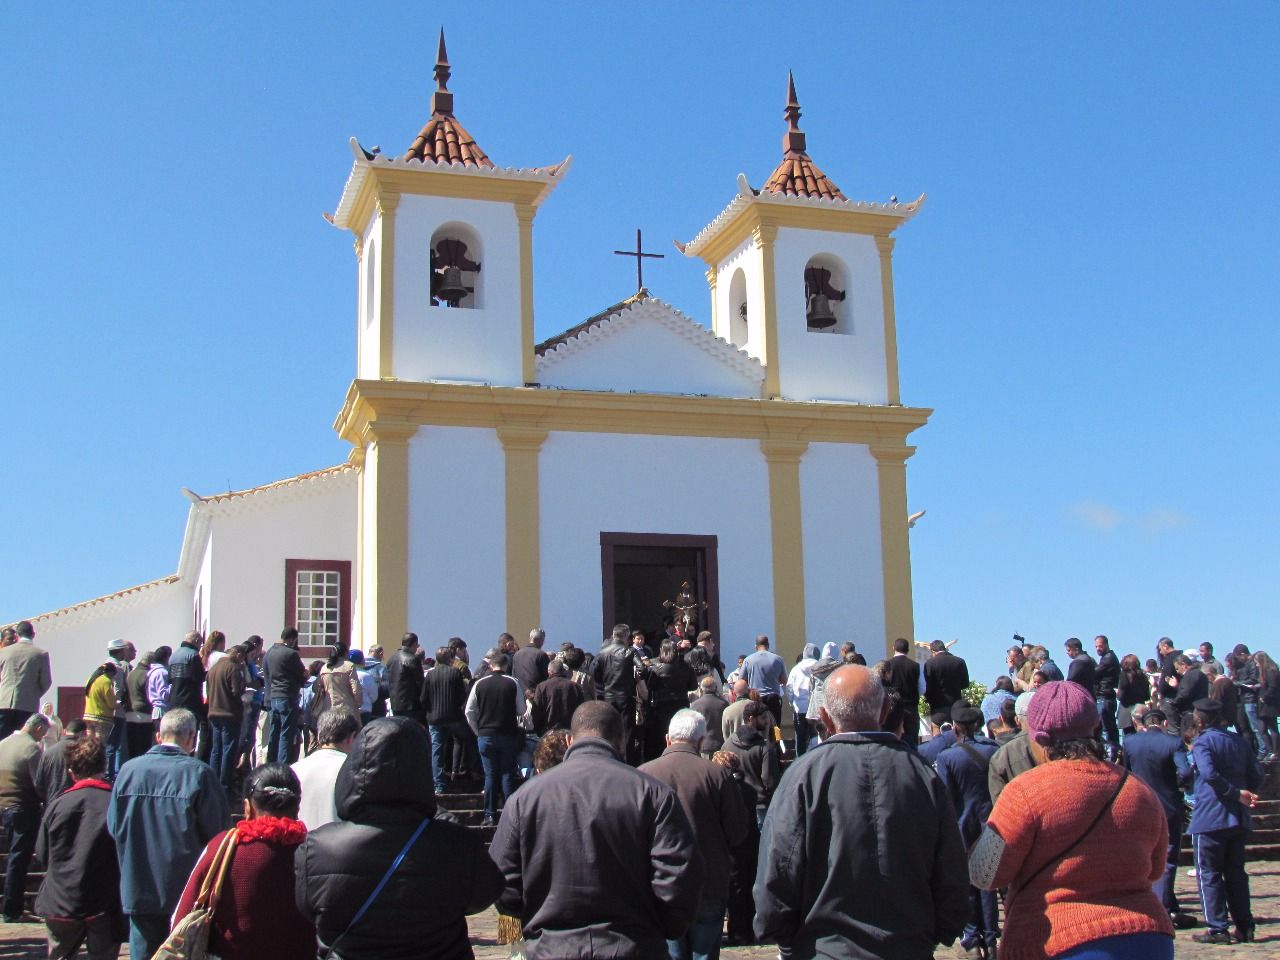 Momento especial de oração reúne as famílias dos padres no Santuário da Padroeira de Minas